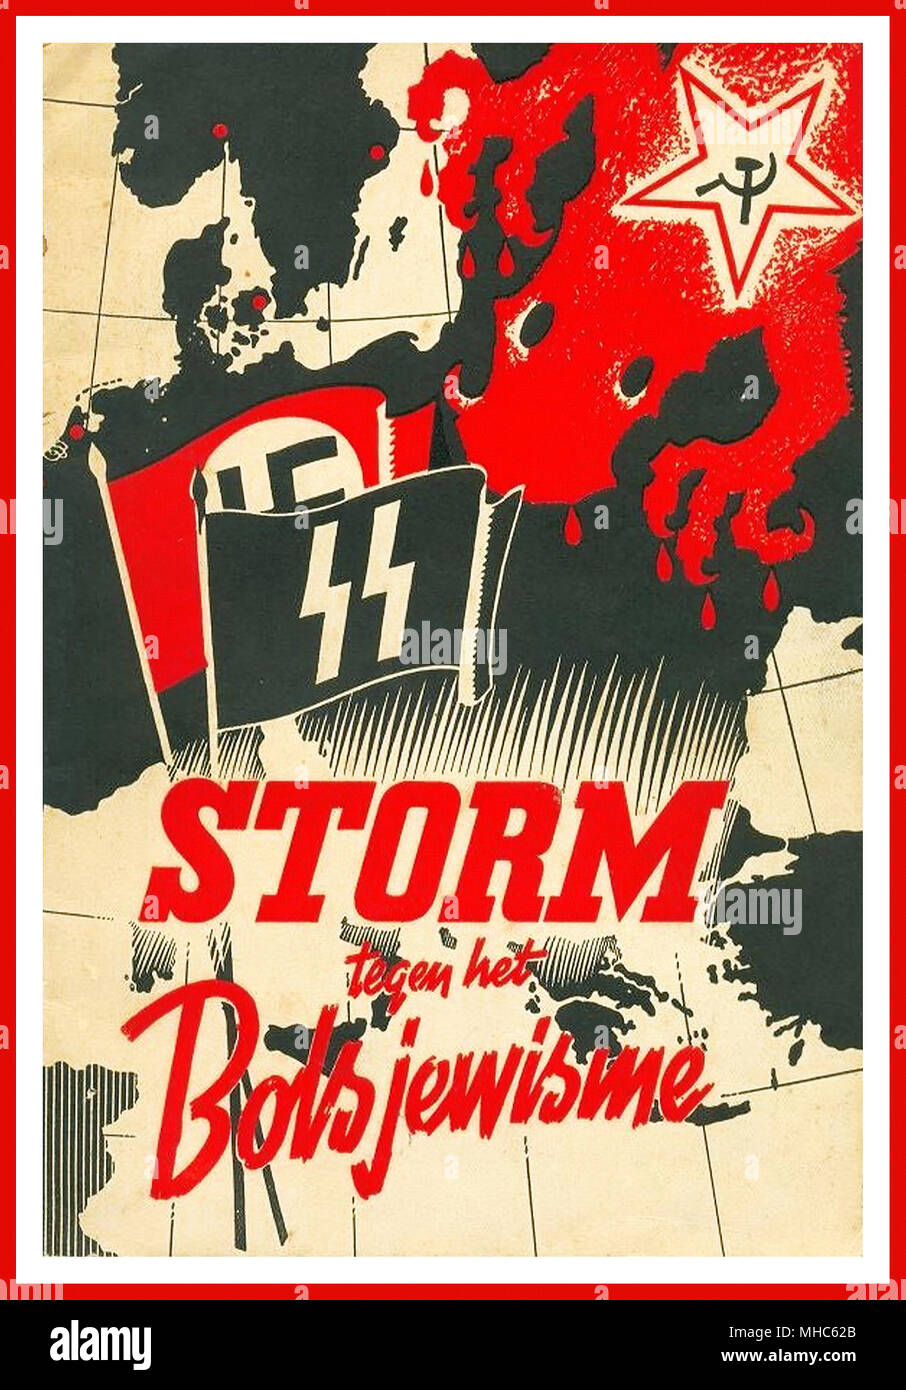 Vintage WW2 poster Nazi en la Holanda ocupada holandés carteles de propaganda Nazi 'Storm 1940-44 contra el bolchevismo'', 'Storm tegen het Bolsjewisme' cartel propagandístico HOLANDESA publicado por la revista de propaganda Nazi 'Storm SS'. Foto de stock